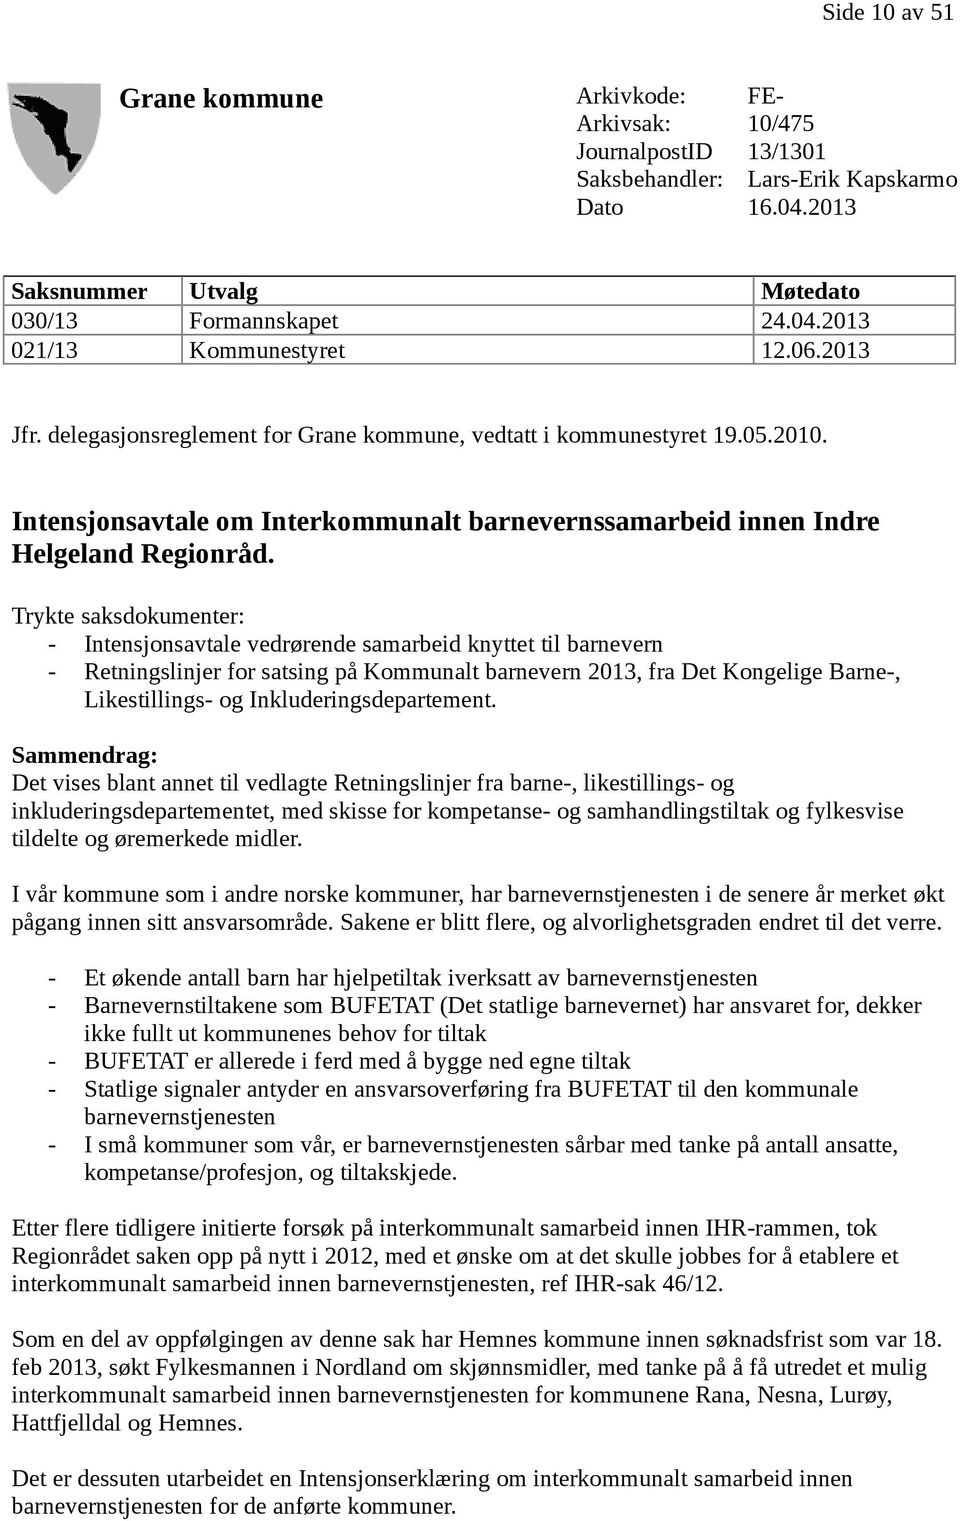 Intensjonsavtale om Interkommunalt barnevernssamarbeid innen Indre Helgeland Regionråd.